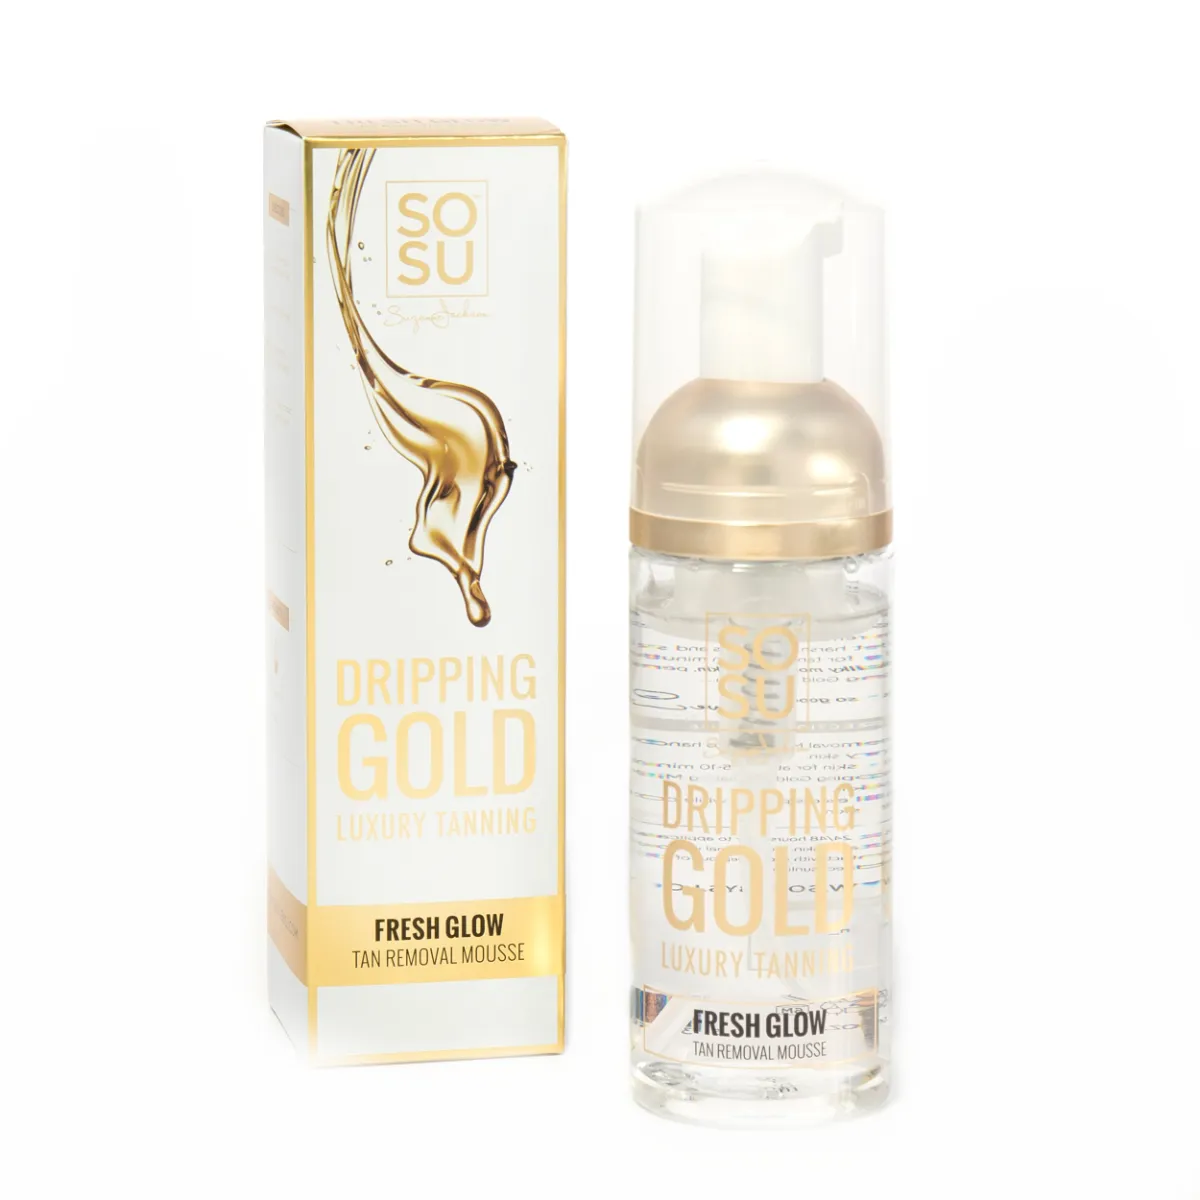 SOSU Dripping Gold Fresh Glow Pěna na odstranění opálení 150 ml